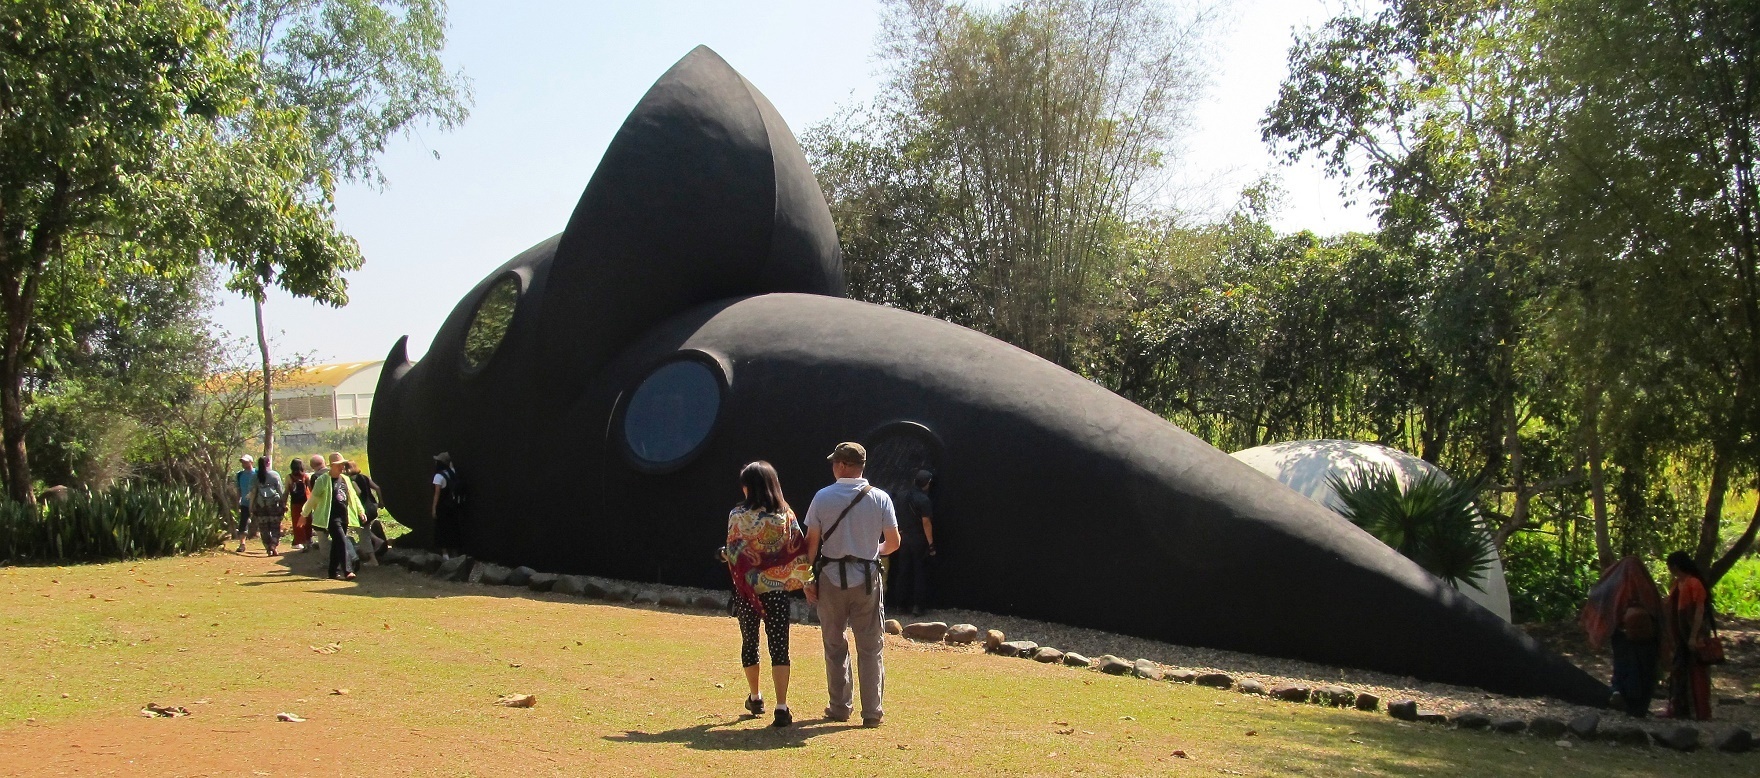 Černá ponorka - Černý klášter - Chiang Rai - Thajsko.